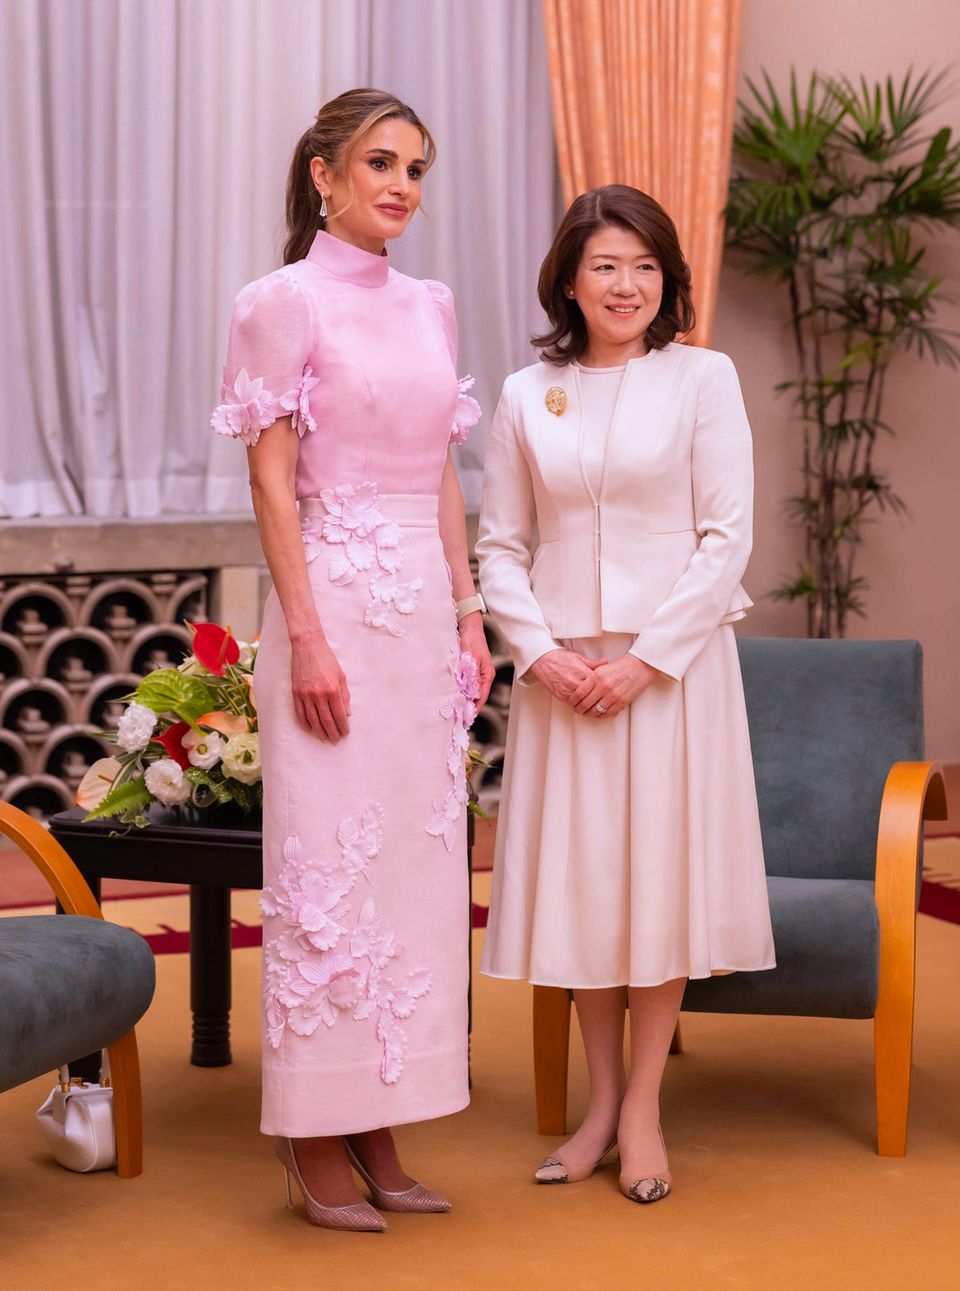 Mit diesem Blüten-Ensemble von Zimmermann in Rosa macht sich Königin Rania bei ihrem Staatsbesuch in Japan nicht nur bei Yuko Kishida, der Frau des japanischen Premierministers Fumio Kishida beliebt. In Japan blühen nämlich zur Zeit die Kirschbäume, und die Kirschblüte gehört zu den wichtigsten Symbolen des Landes, sie steht für Schönheit, Aufbruch und Vergänglichkeit. Passender könnte ein Outfit kaum ausgesucht sein.